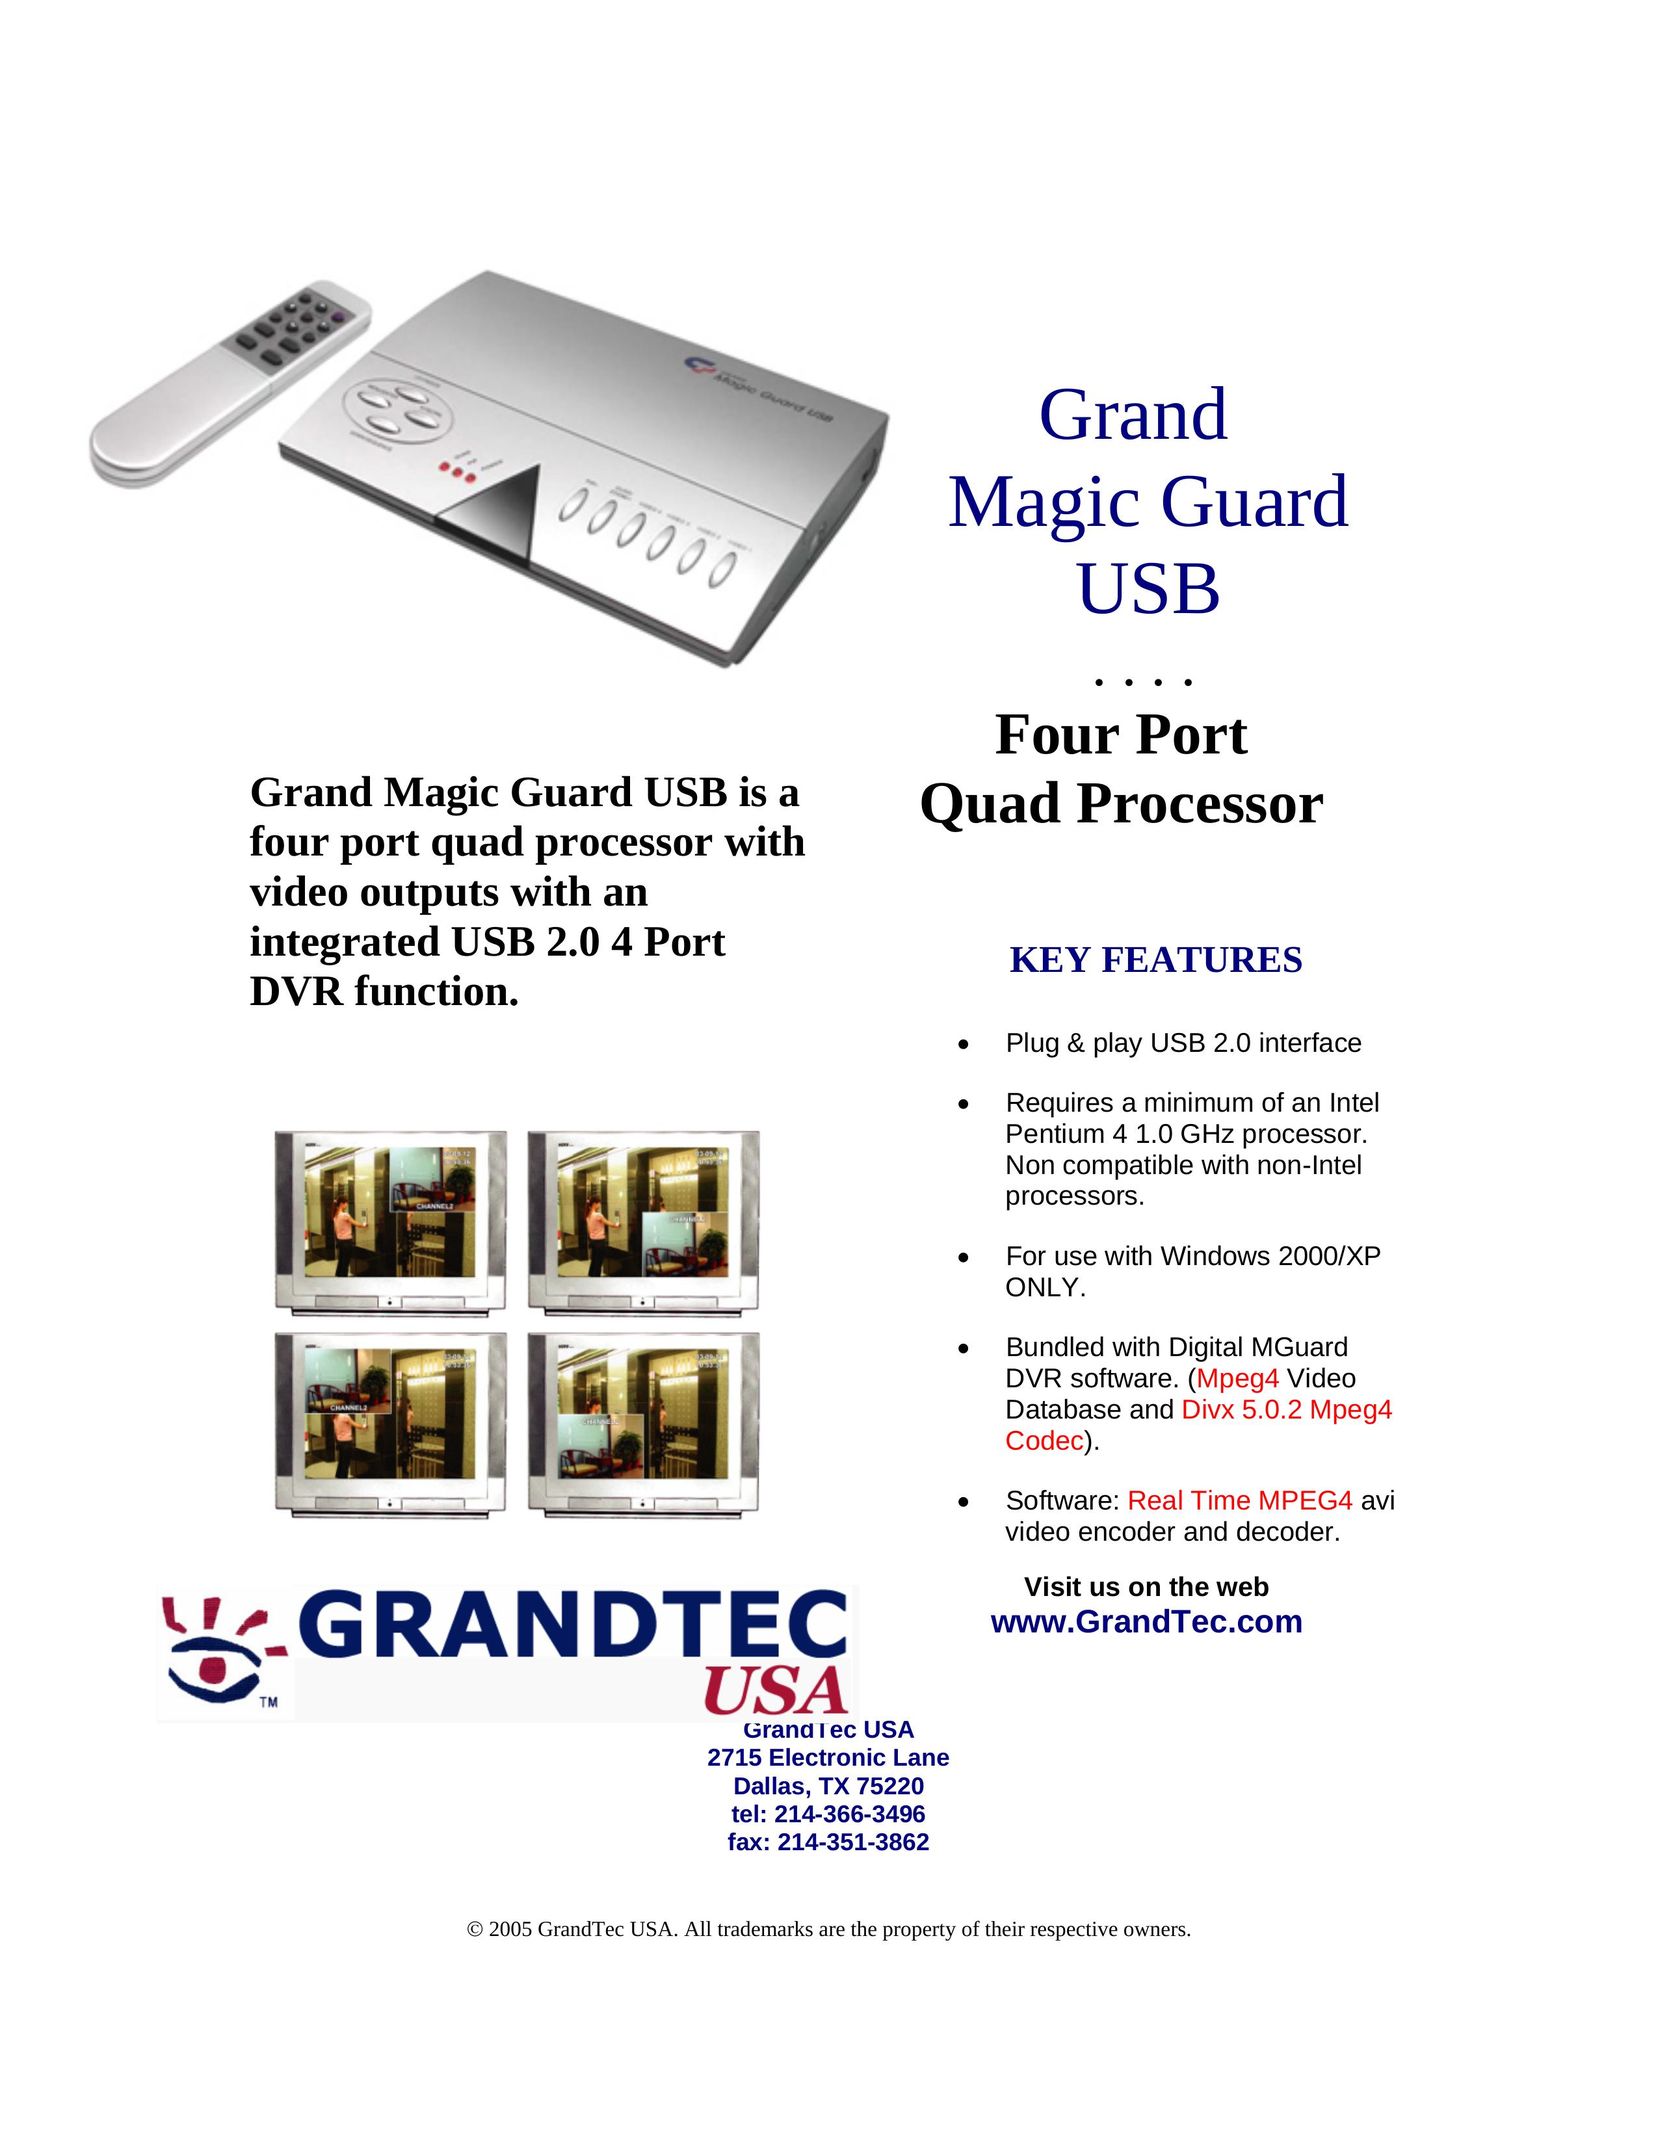 GrandTec Grand Magic Guard USB Network Card User Manual